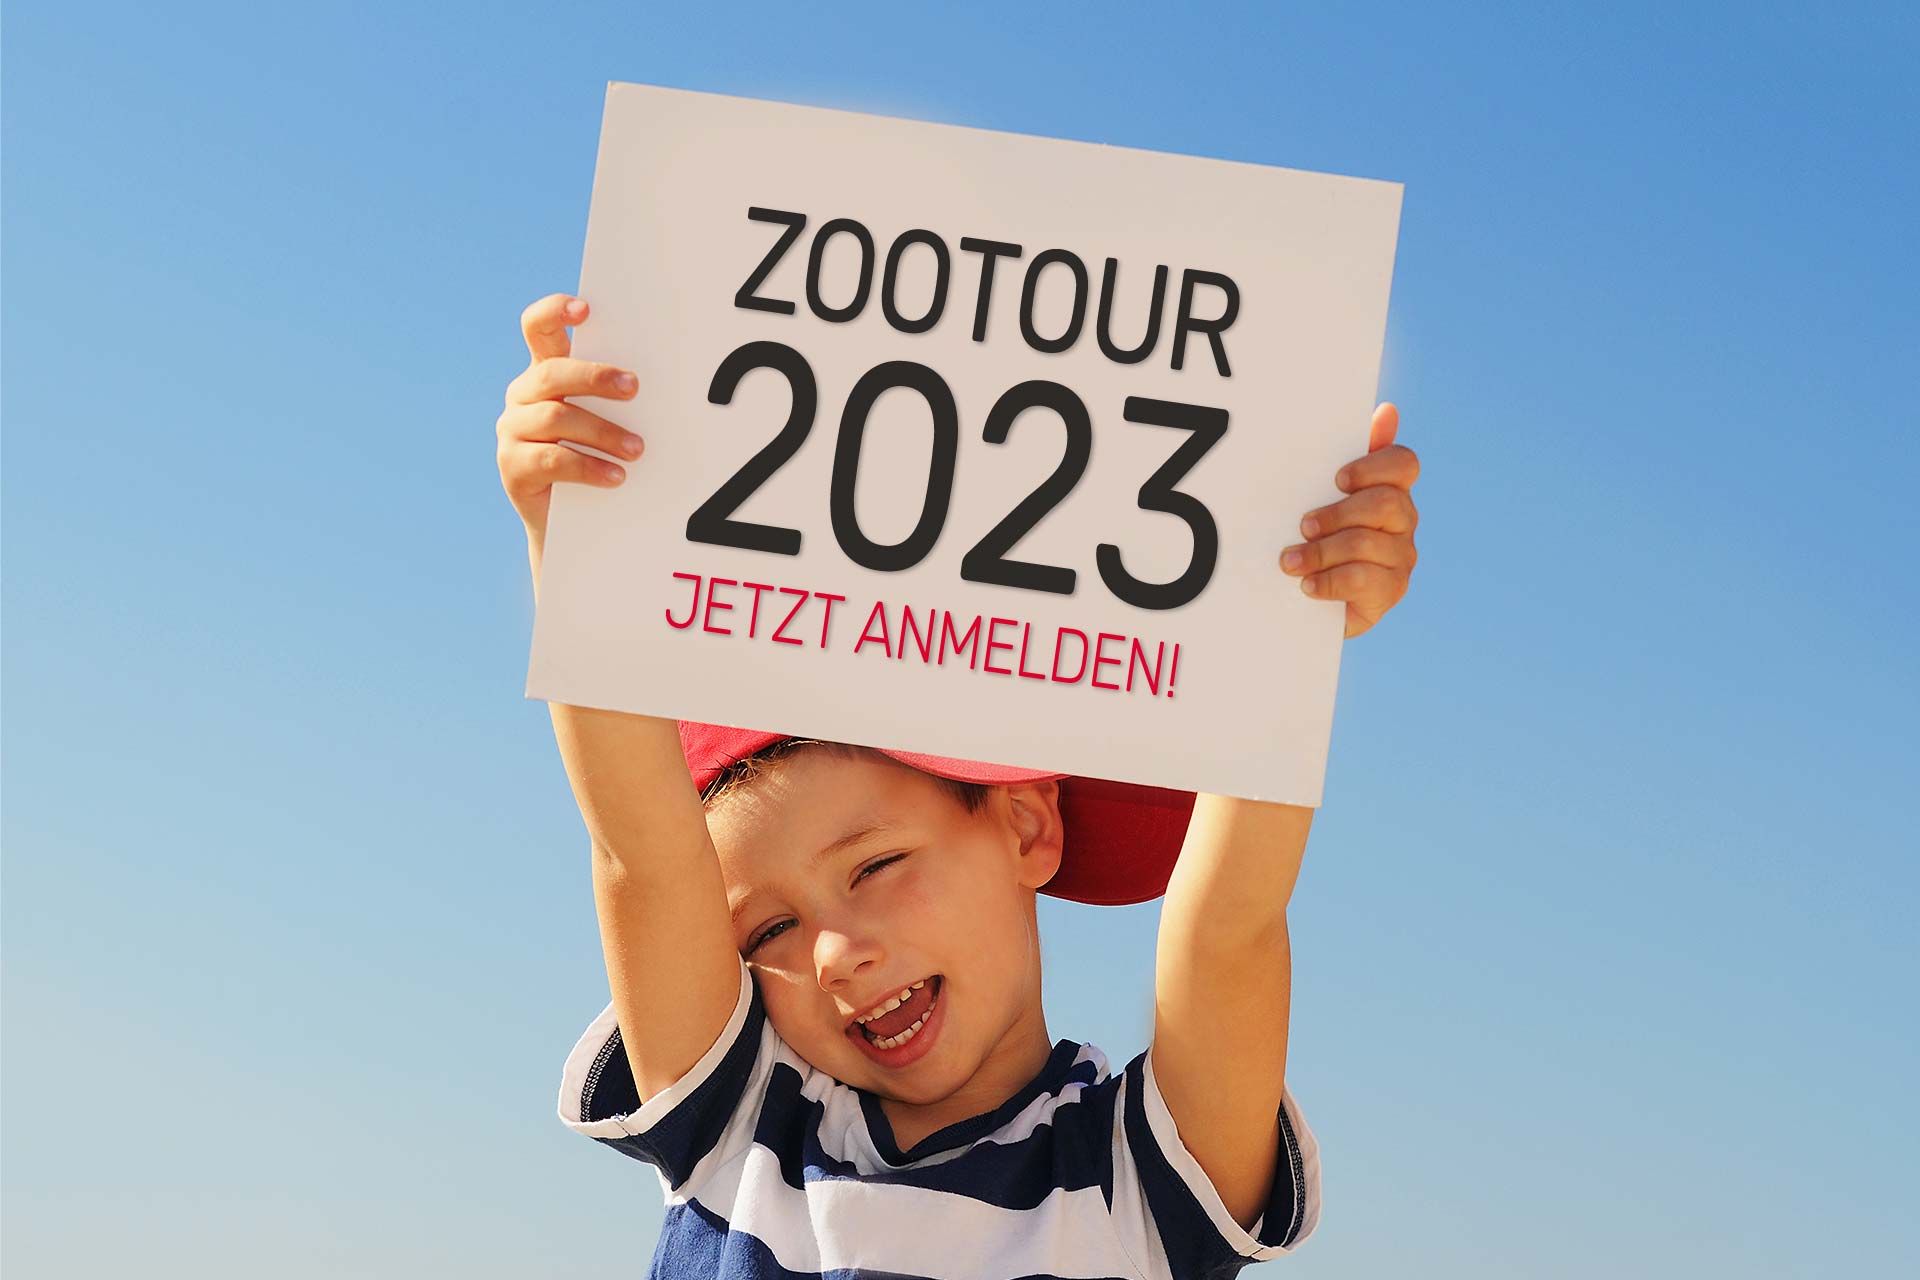 Zootour 2023 / Anmeldung